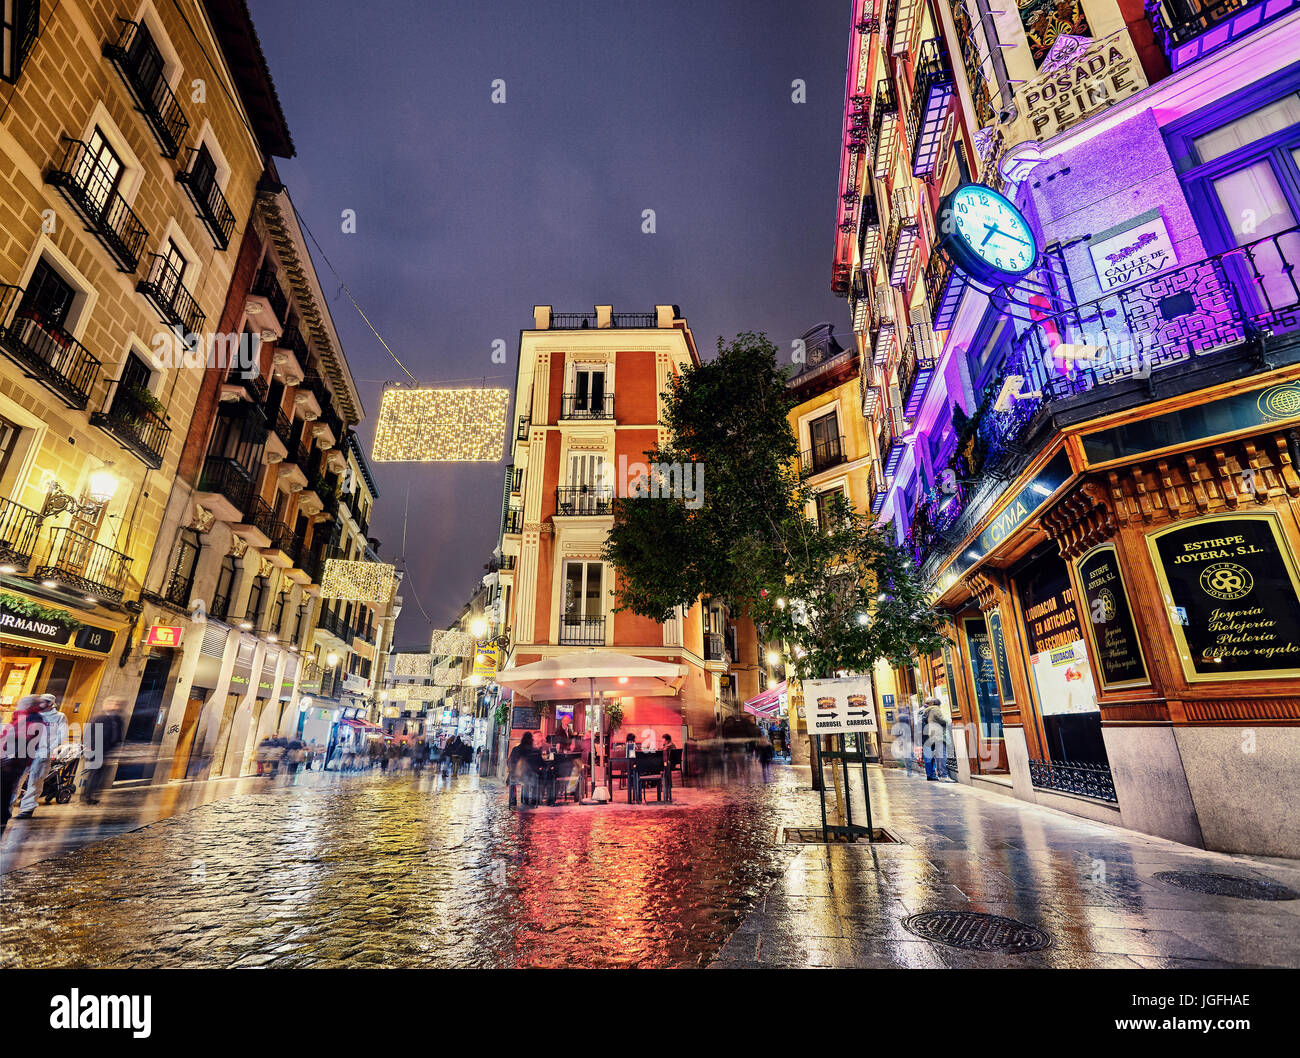 Postas street à Noël. Madrid. Espagne Banque D'Images